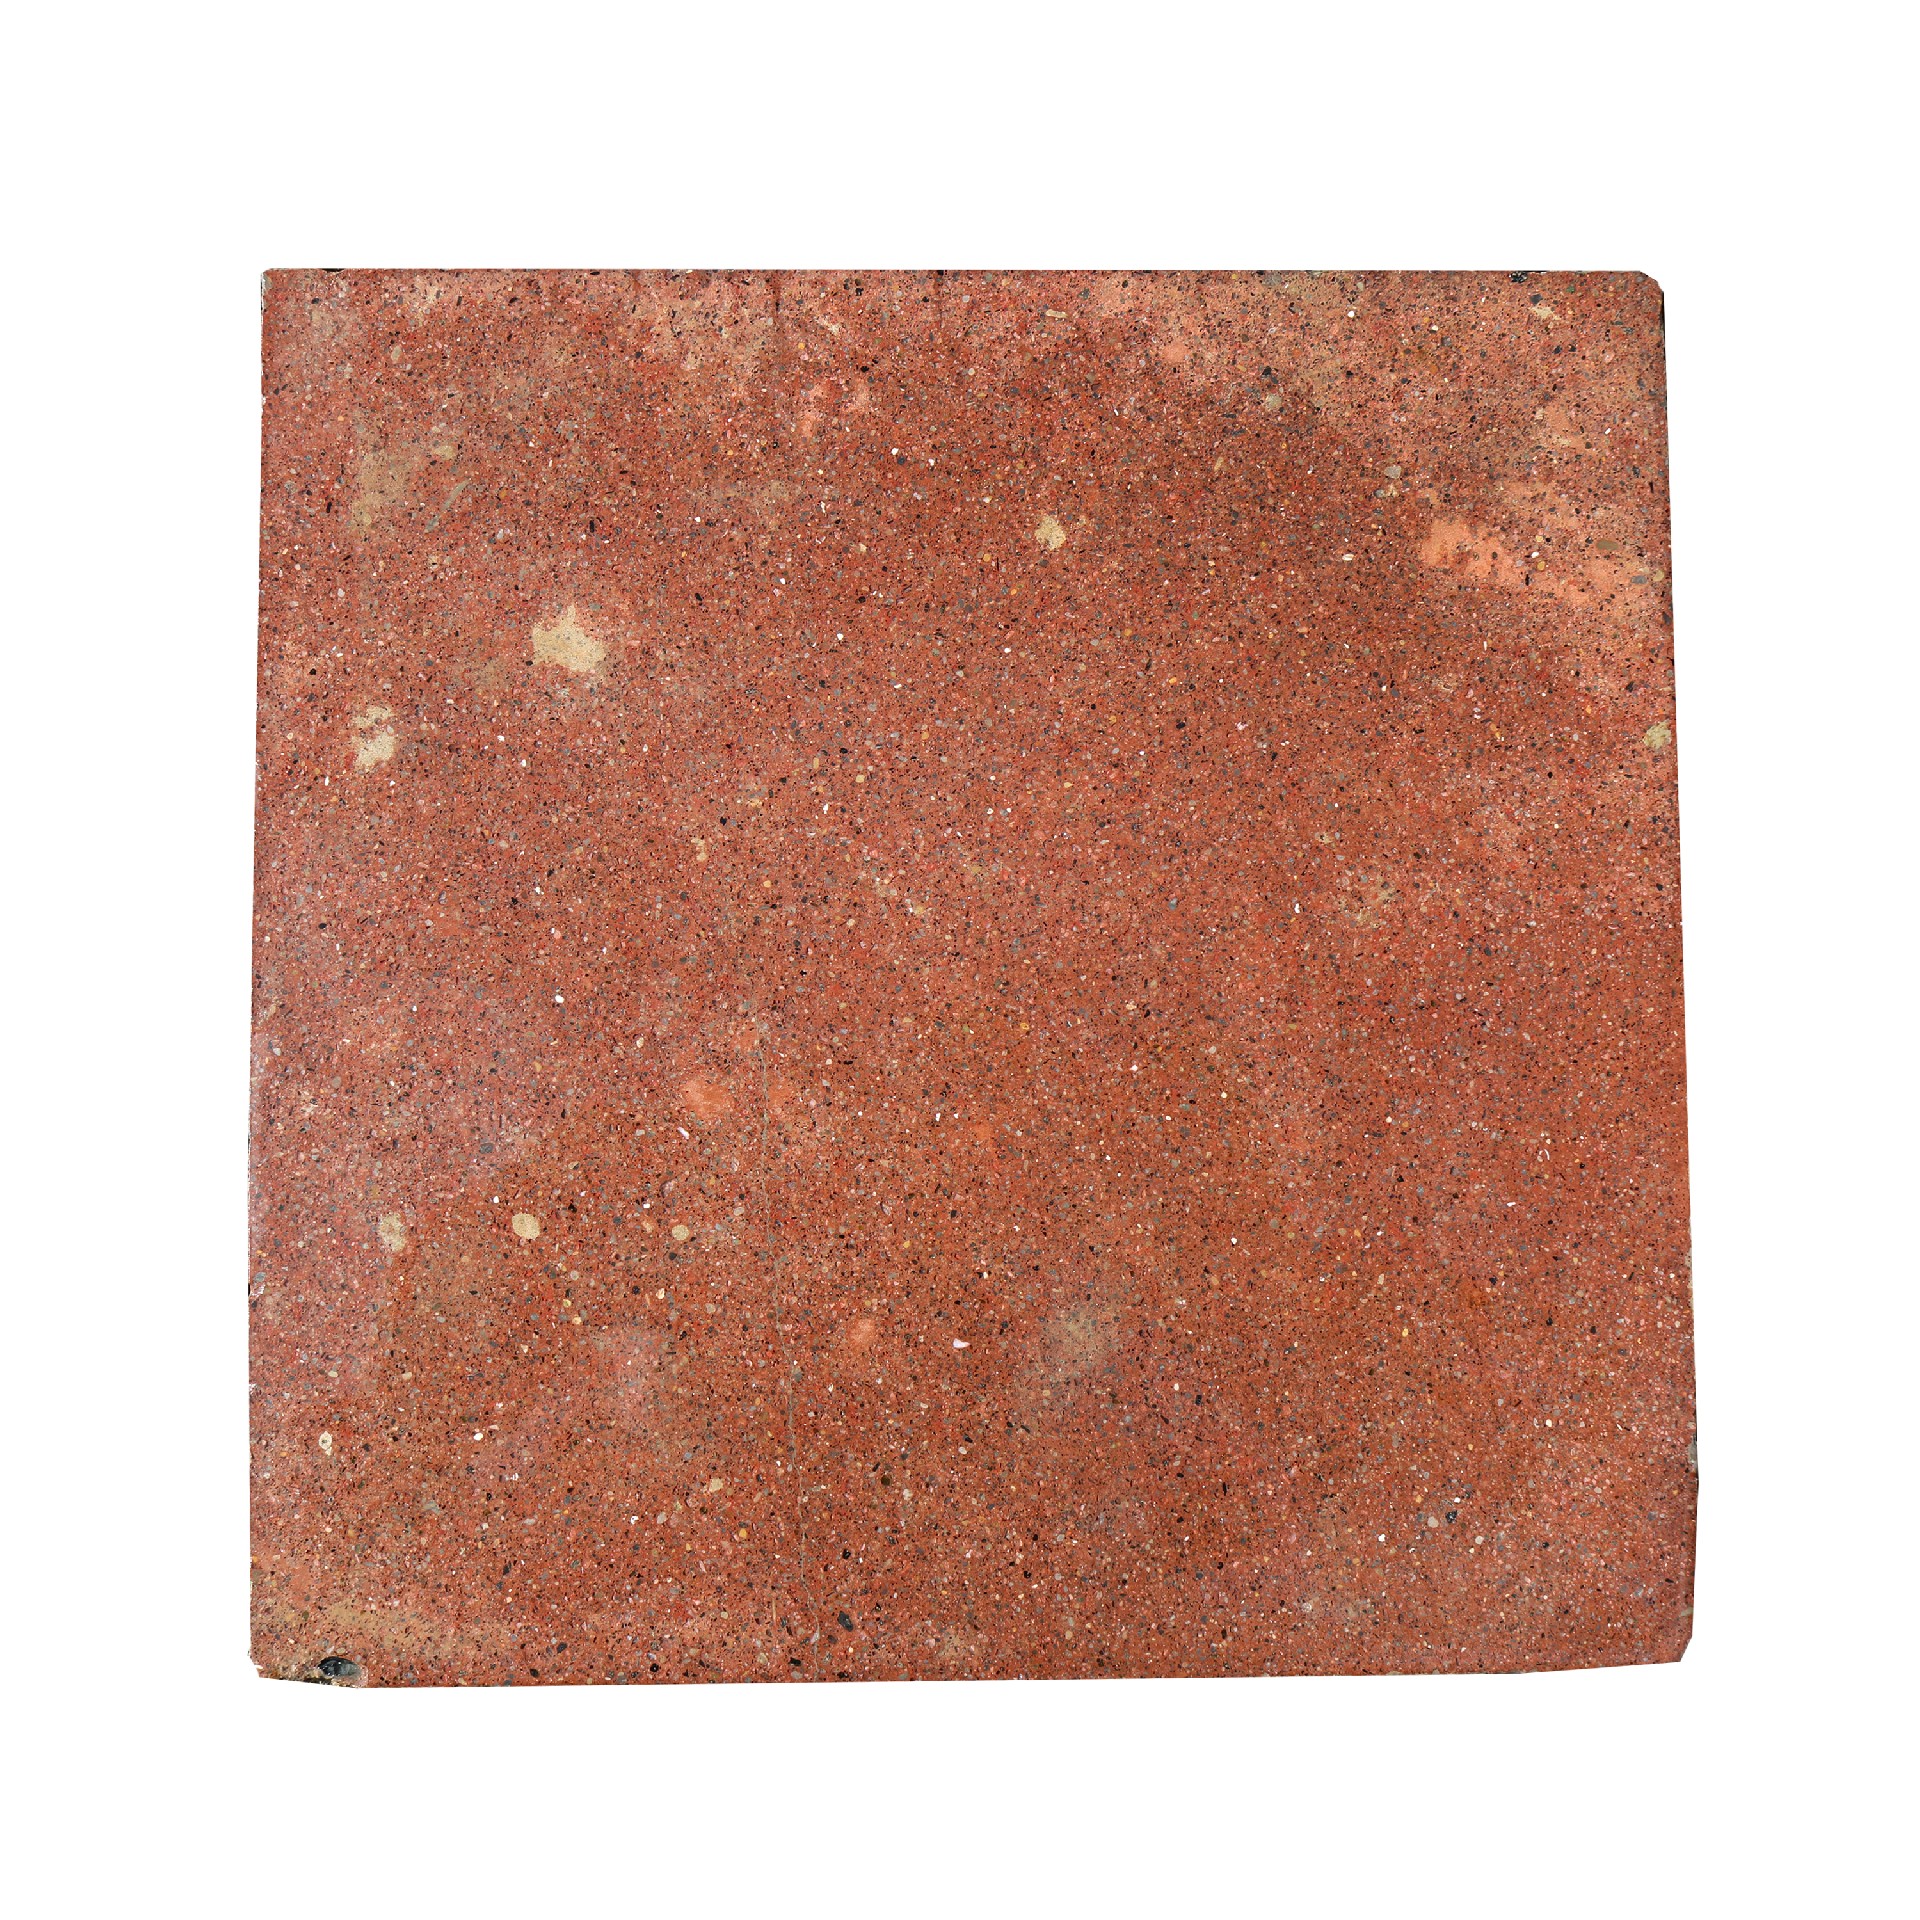 Antica pavimentazione in graniglia. cm 25x25. - 1